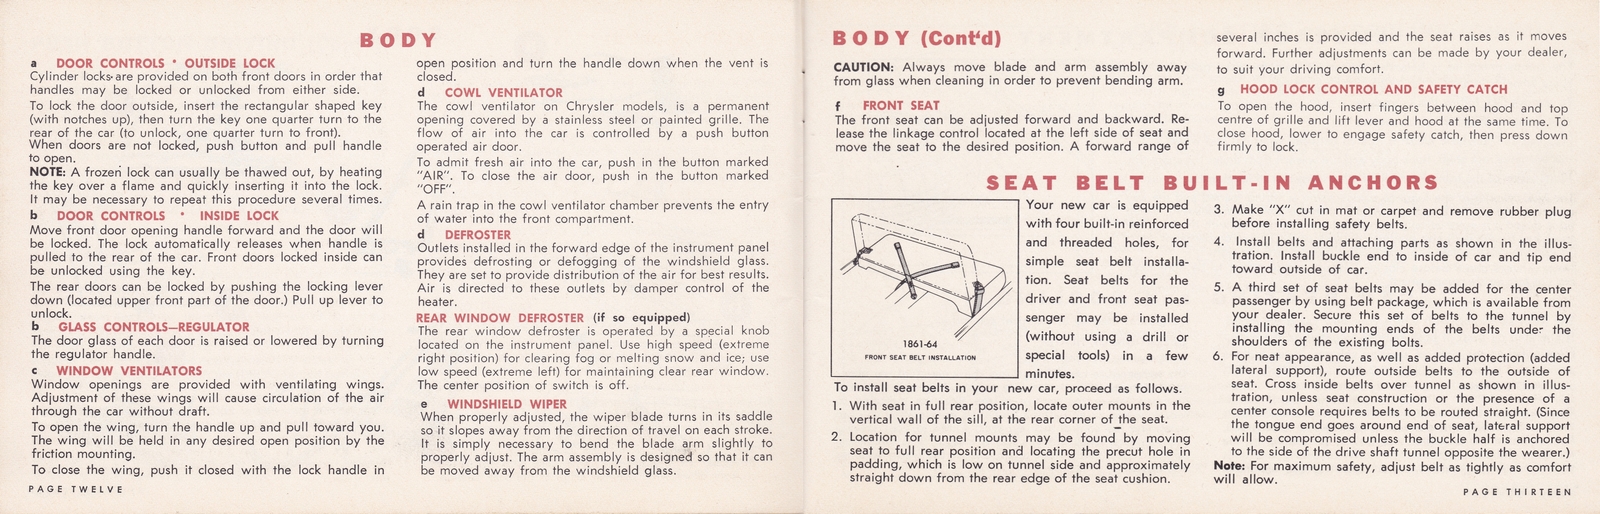 n_1964 Chrysler Owner's Manual (Cdn)-12-13.jpg